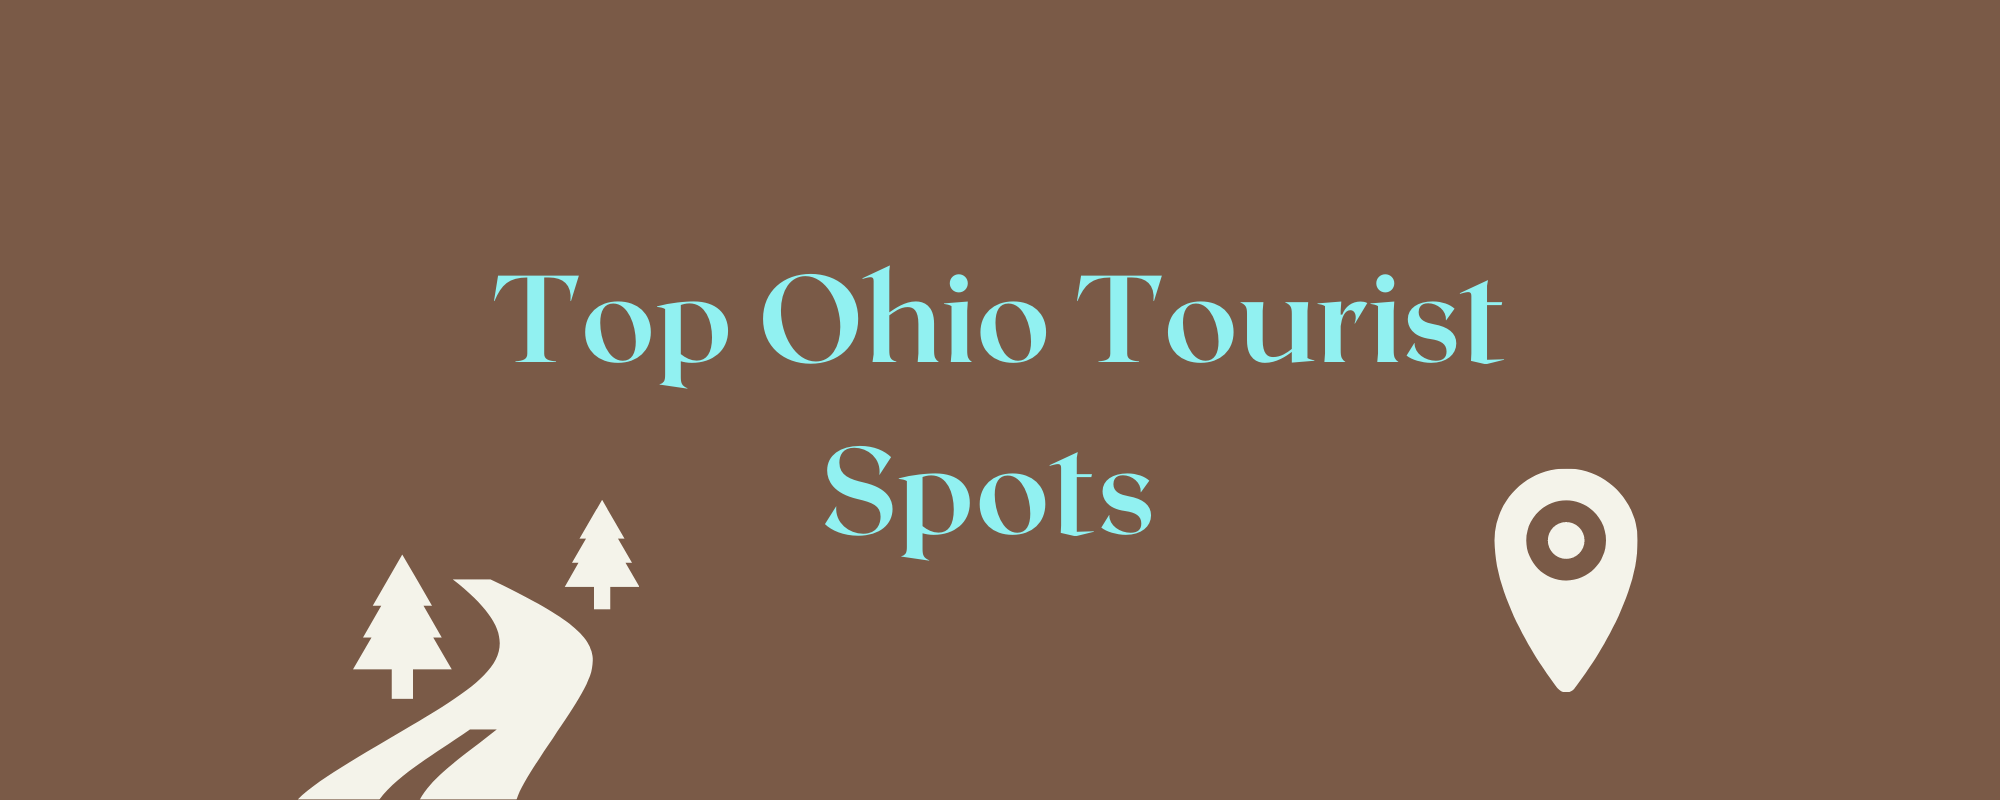 Popular tourist locations in Ohio